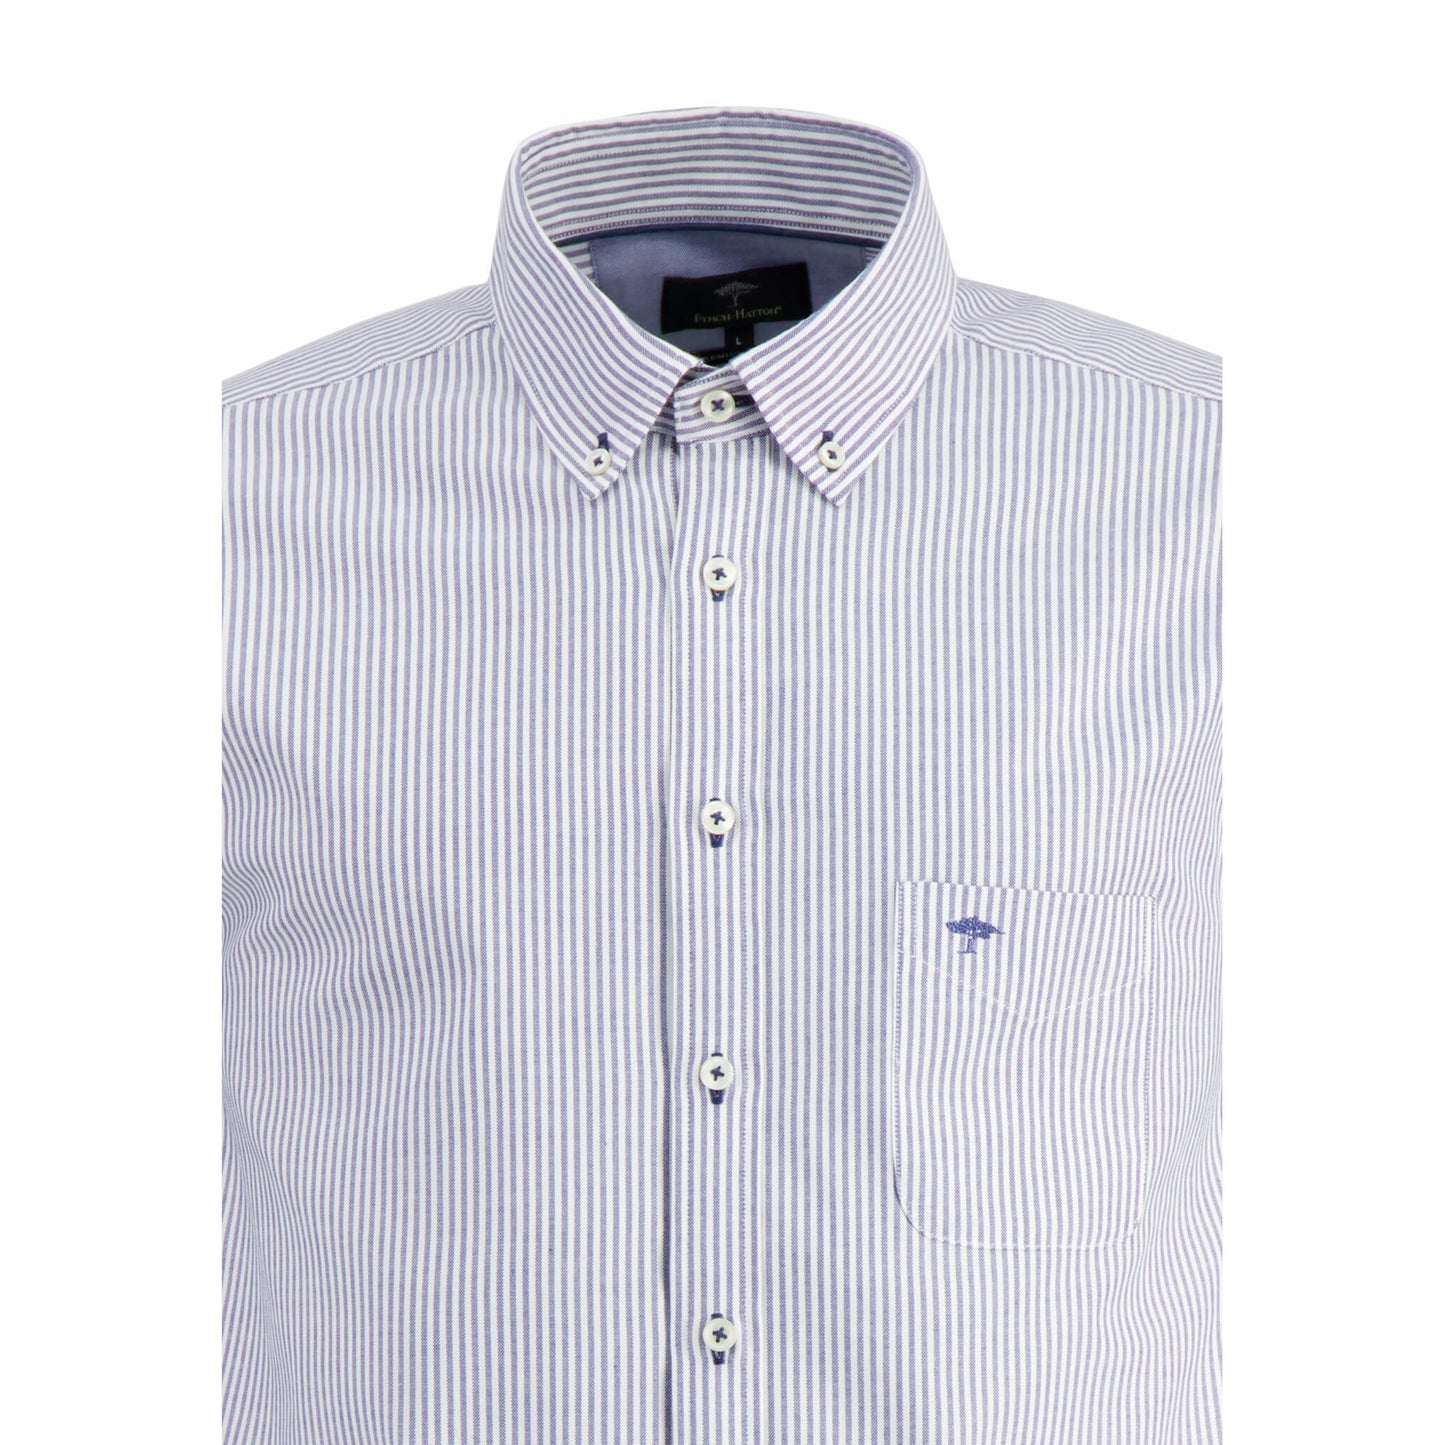 Fynch Hatton 1213 5020 5023 Midblue Oxford Striped Casual Shirt